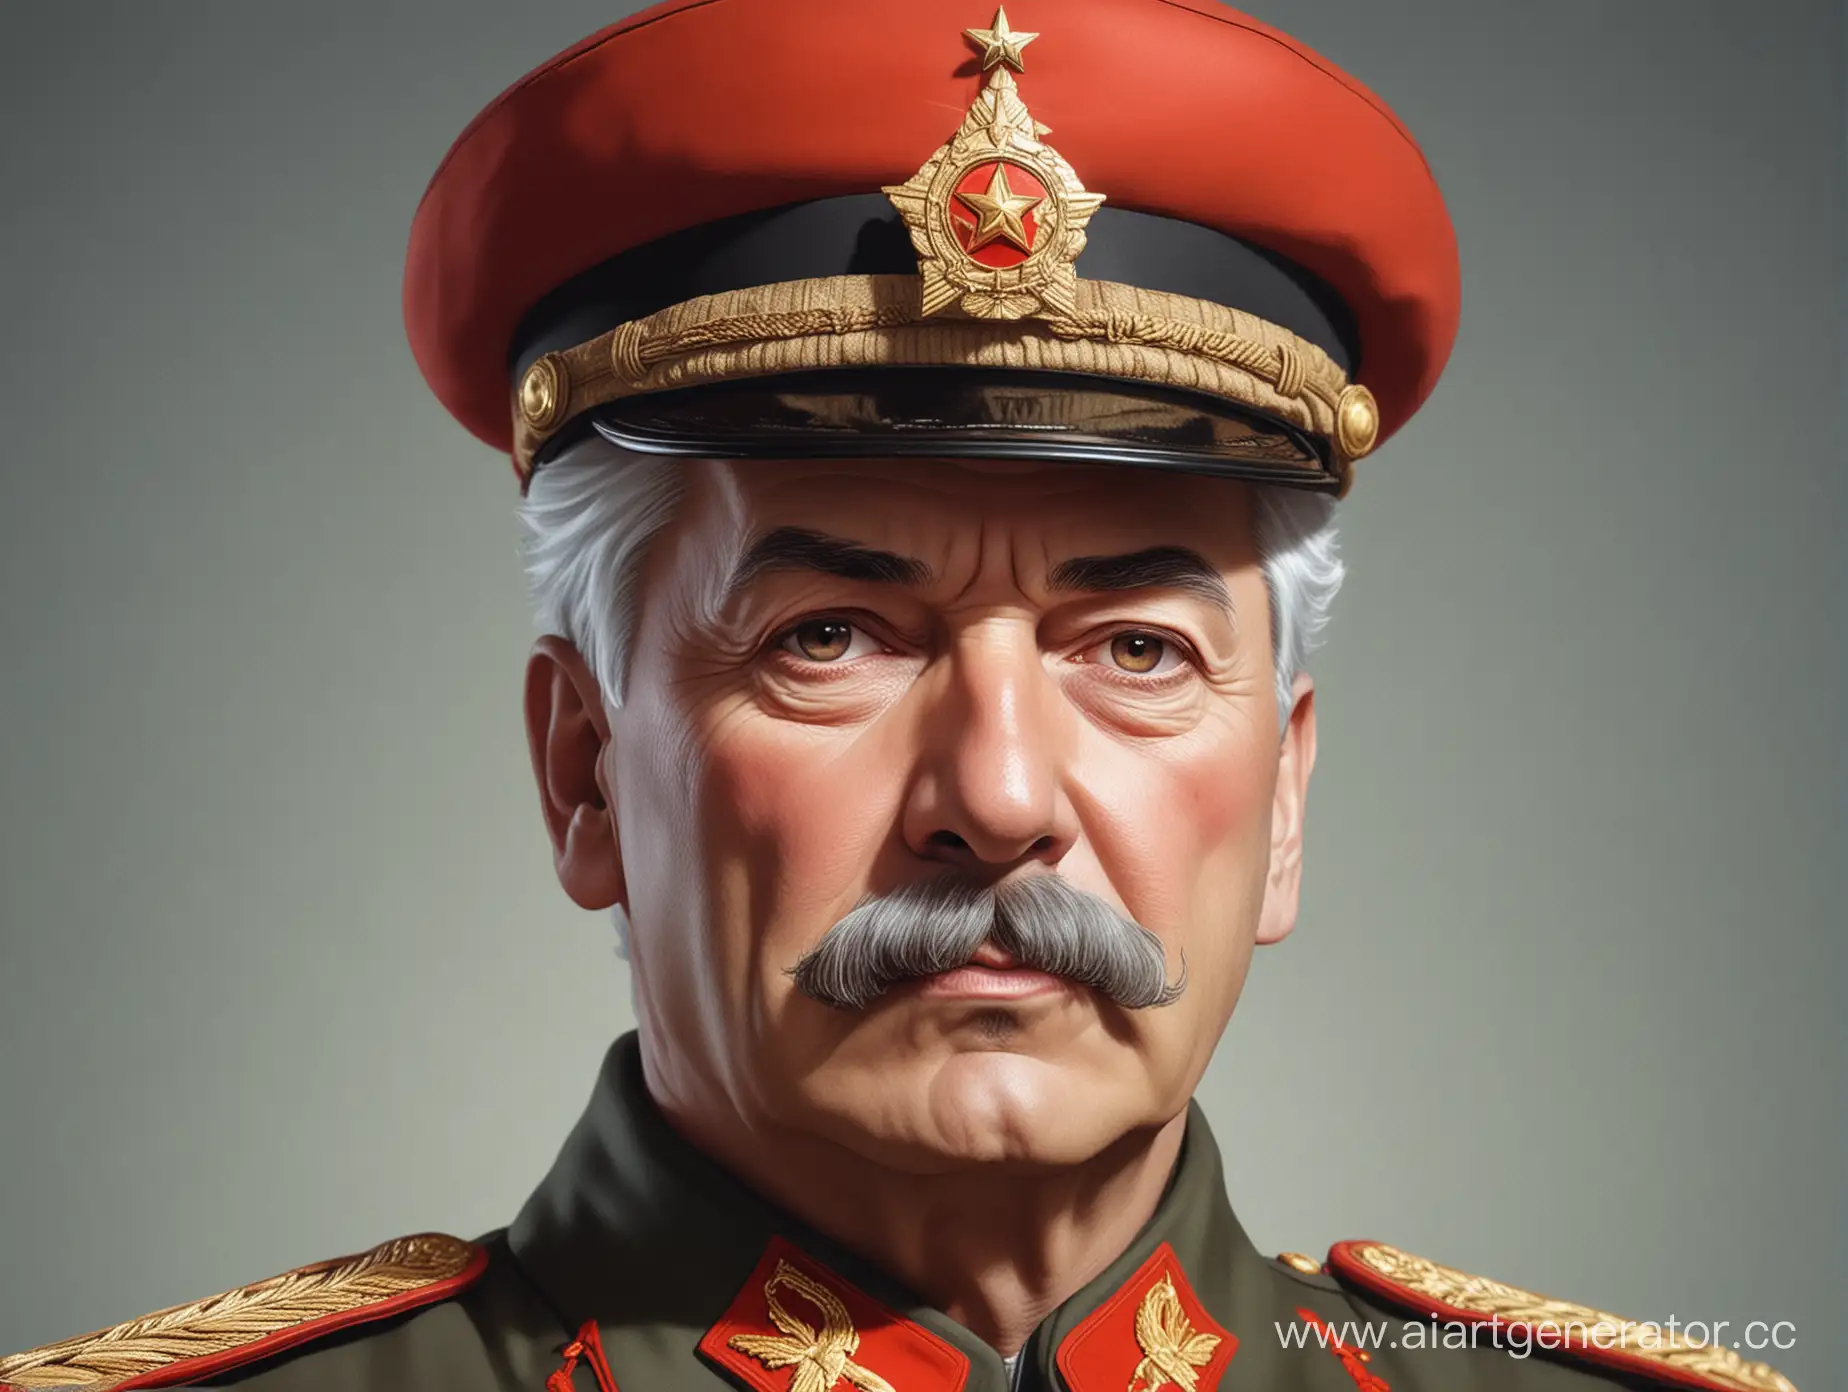 Величественный Сталин, с белыми волосами на голове, левый глаз красный, в аниме стиле